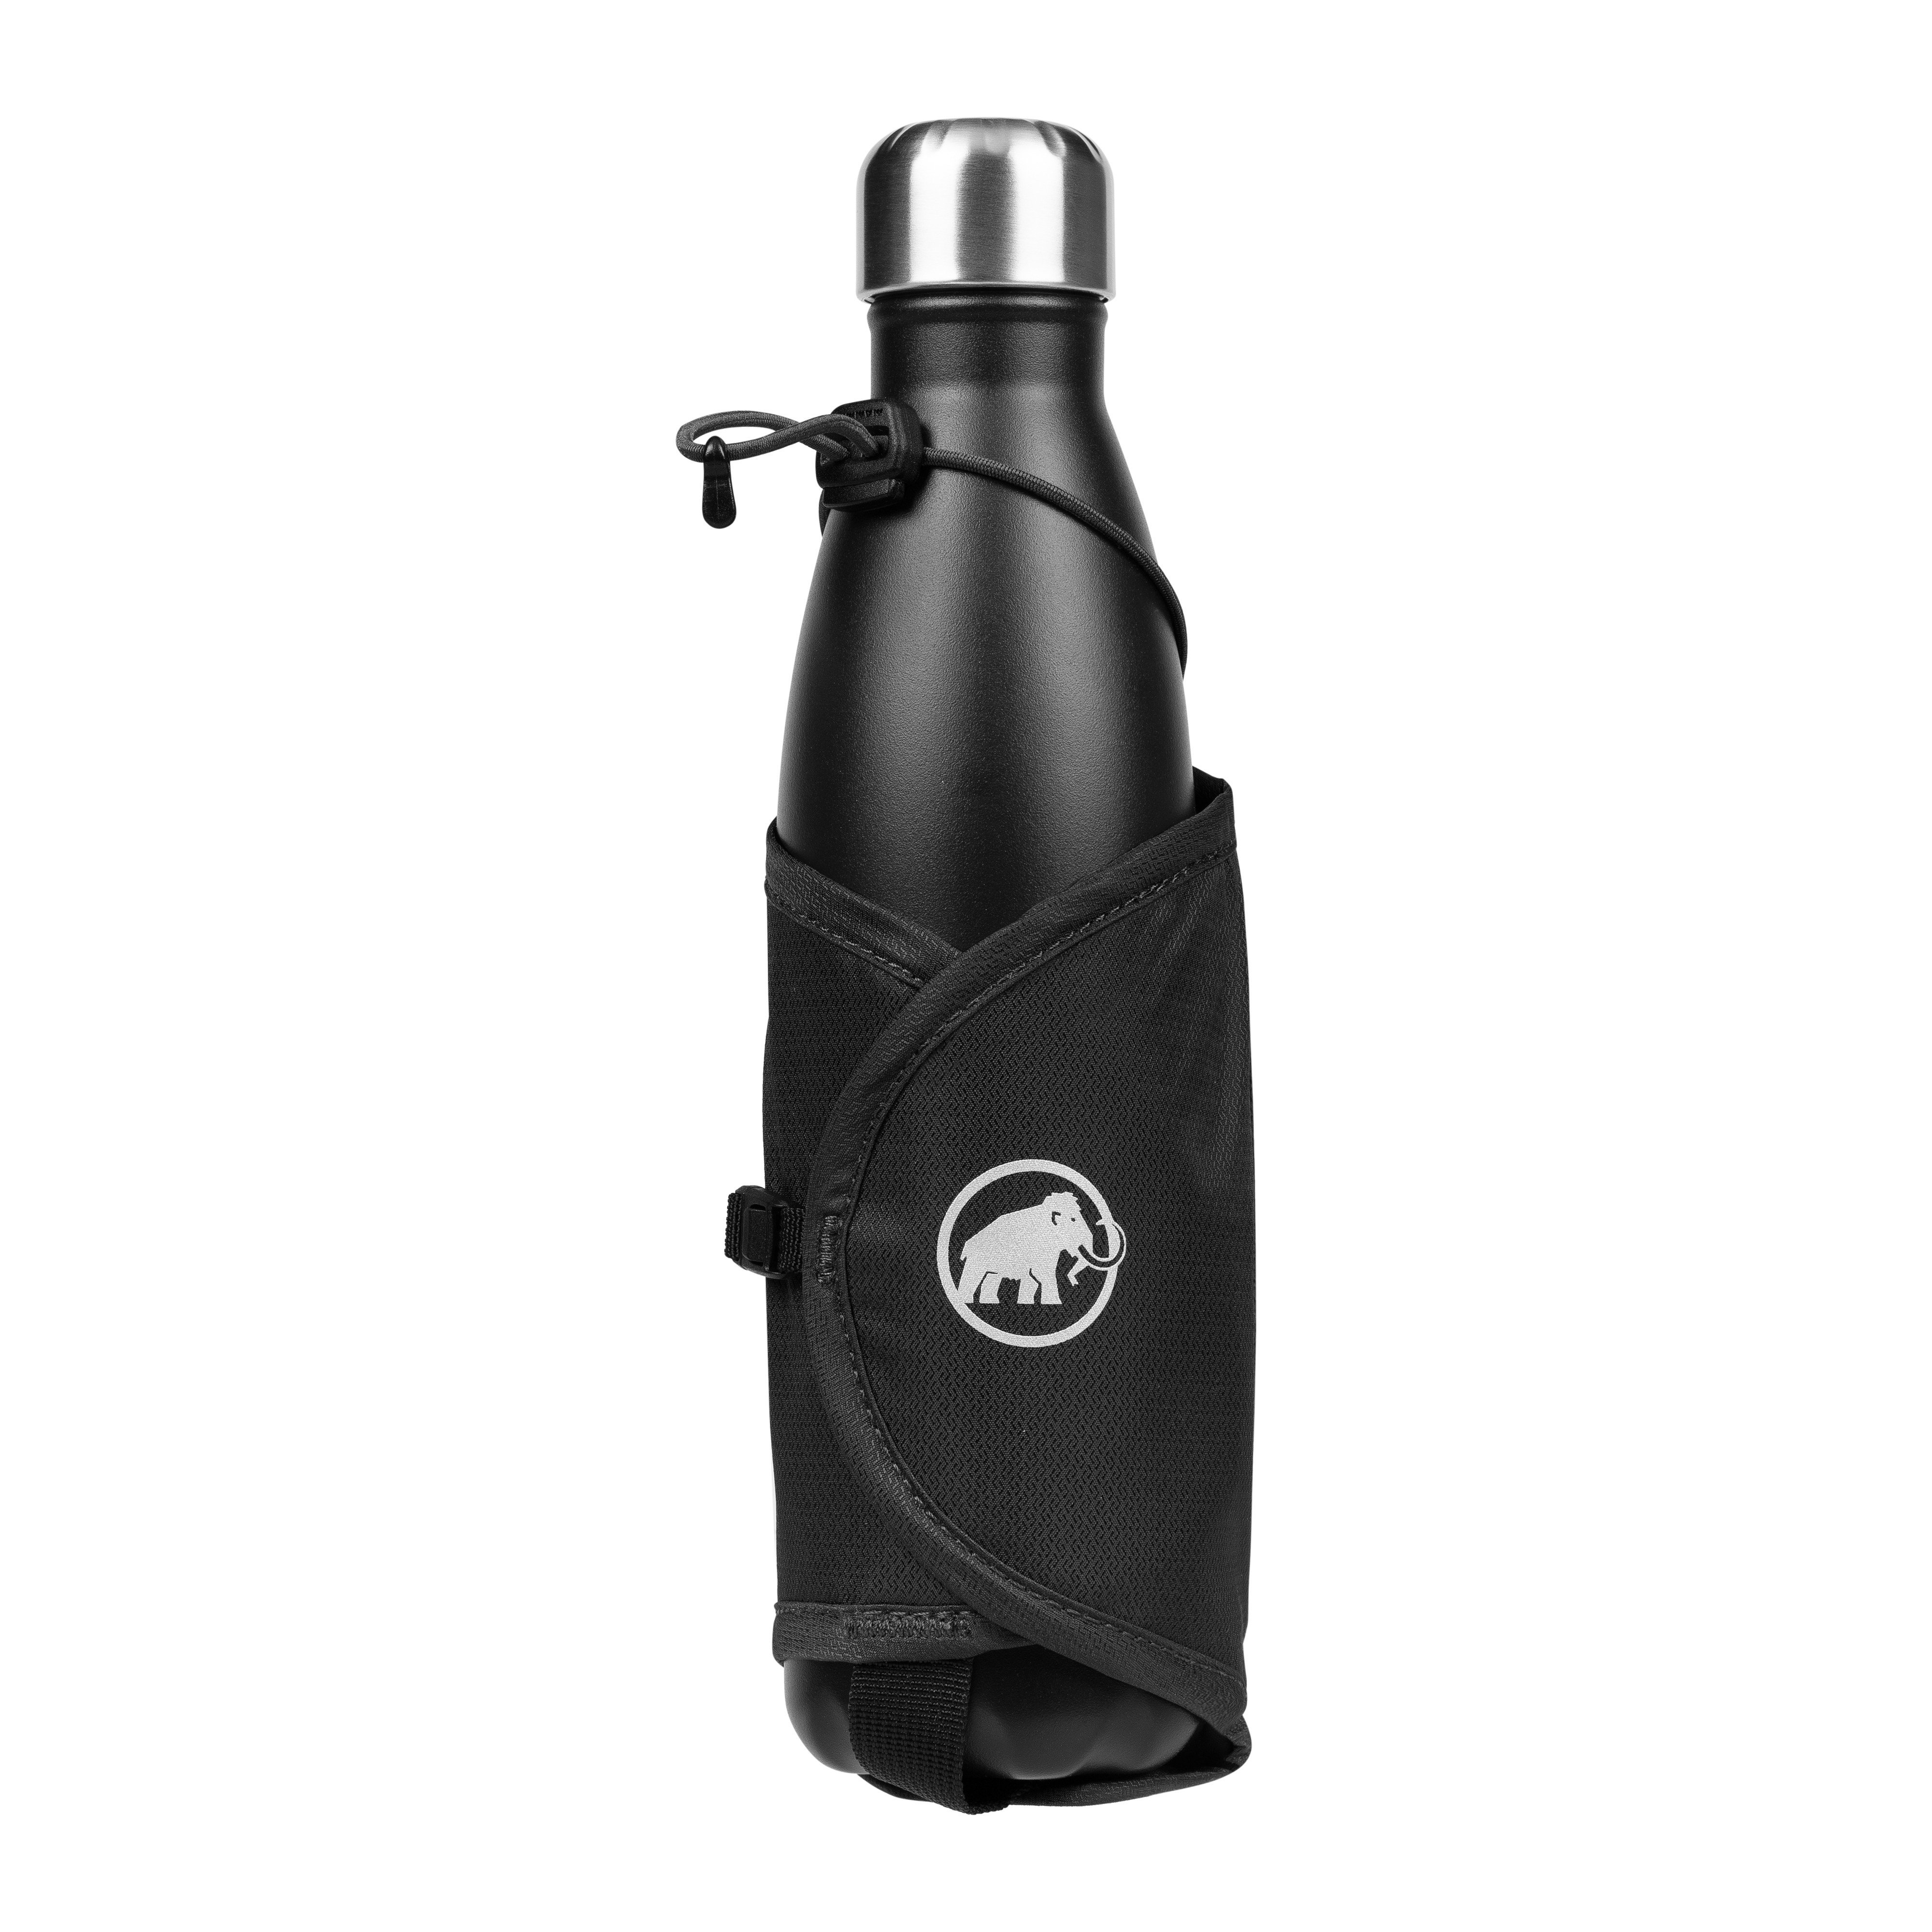 Lithium Add-on Bottle Holder - black, one size product image